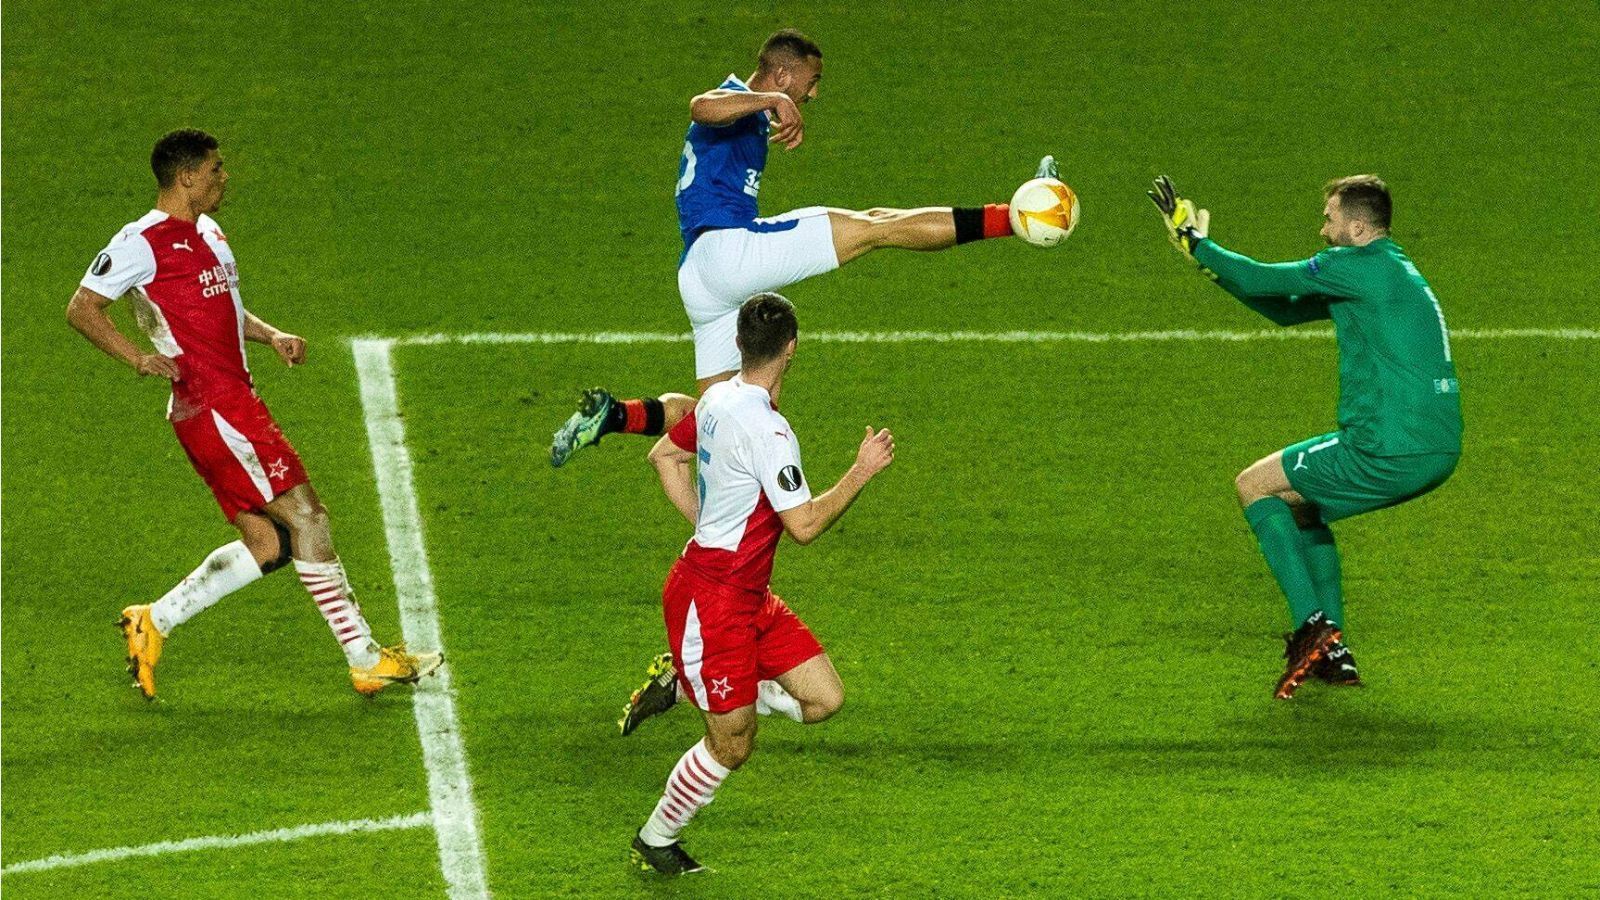 
                <strong>Europa League: Horror-Foul von Kemar Roofe in Bildern</strong><br>
                ... Roofe berührt tatsächlich den Ball, kann diesen aber mit seinem gestreckten Bein nicht kontrollieren ... 
              